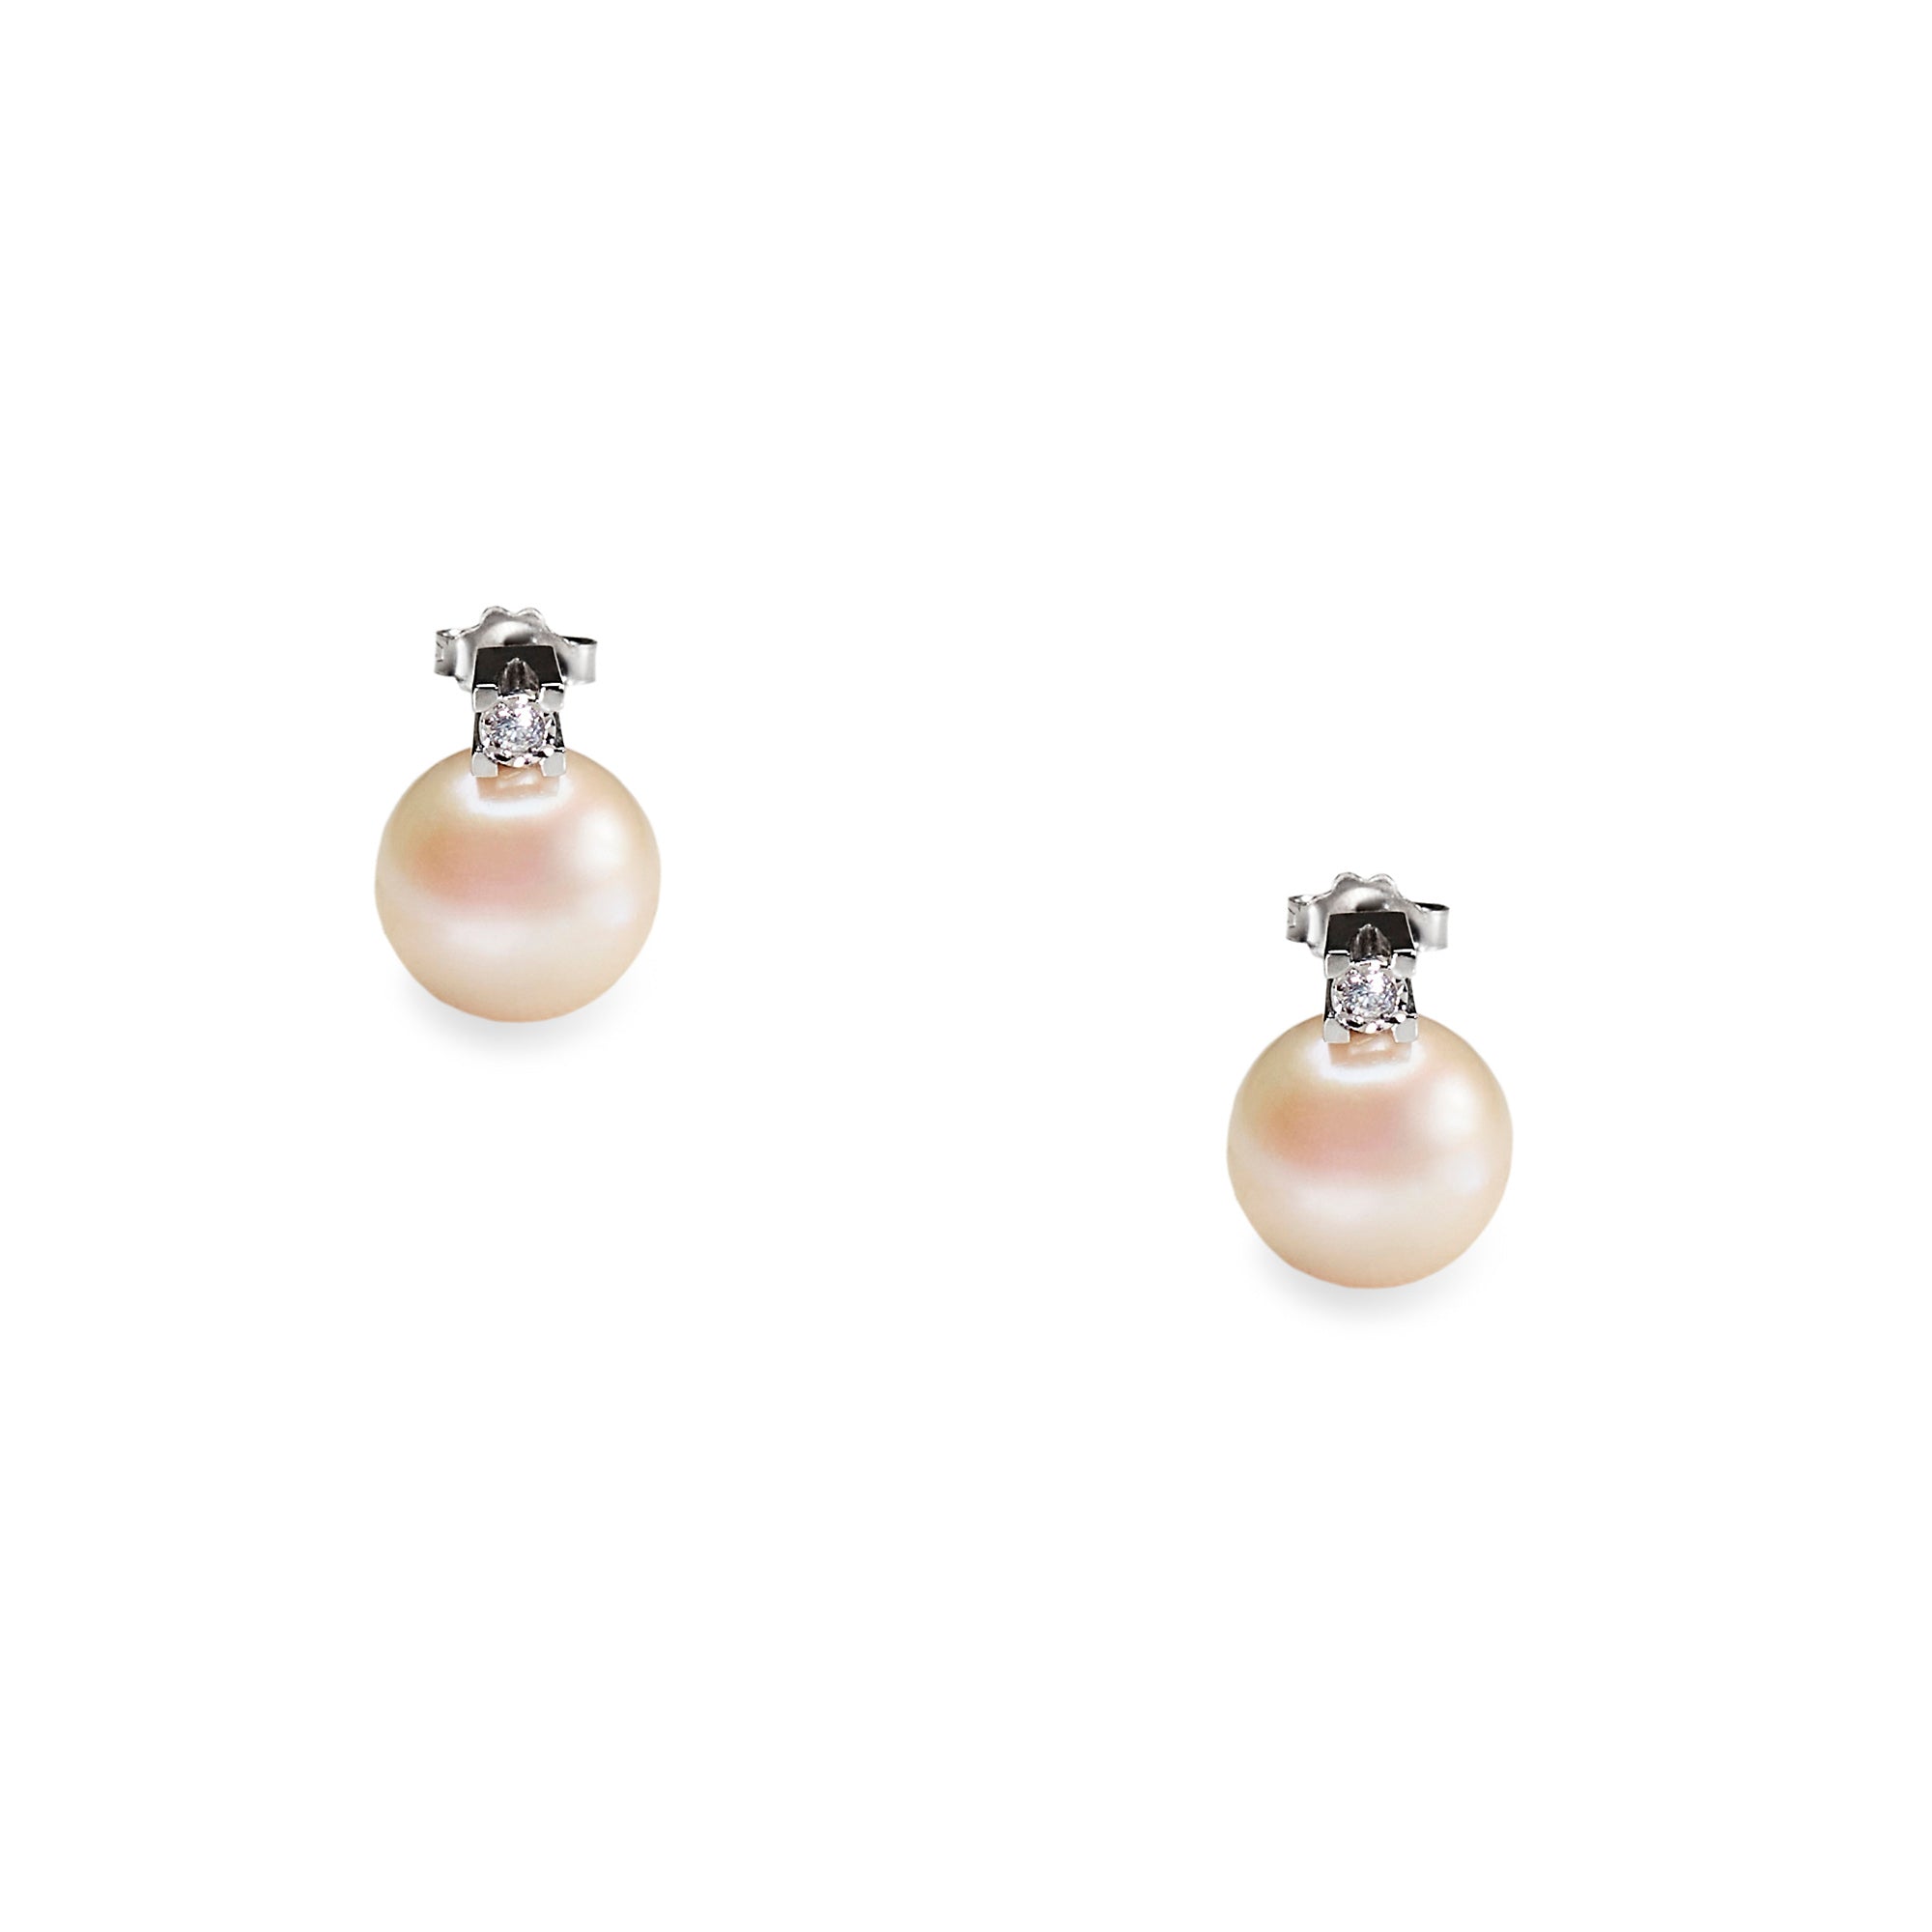 Cercei aur alb cu perle apa dulce 11-12 mm si diamante 0.08 ct